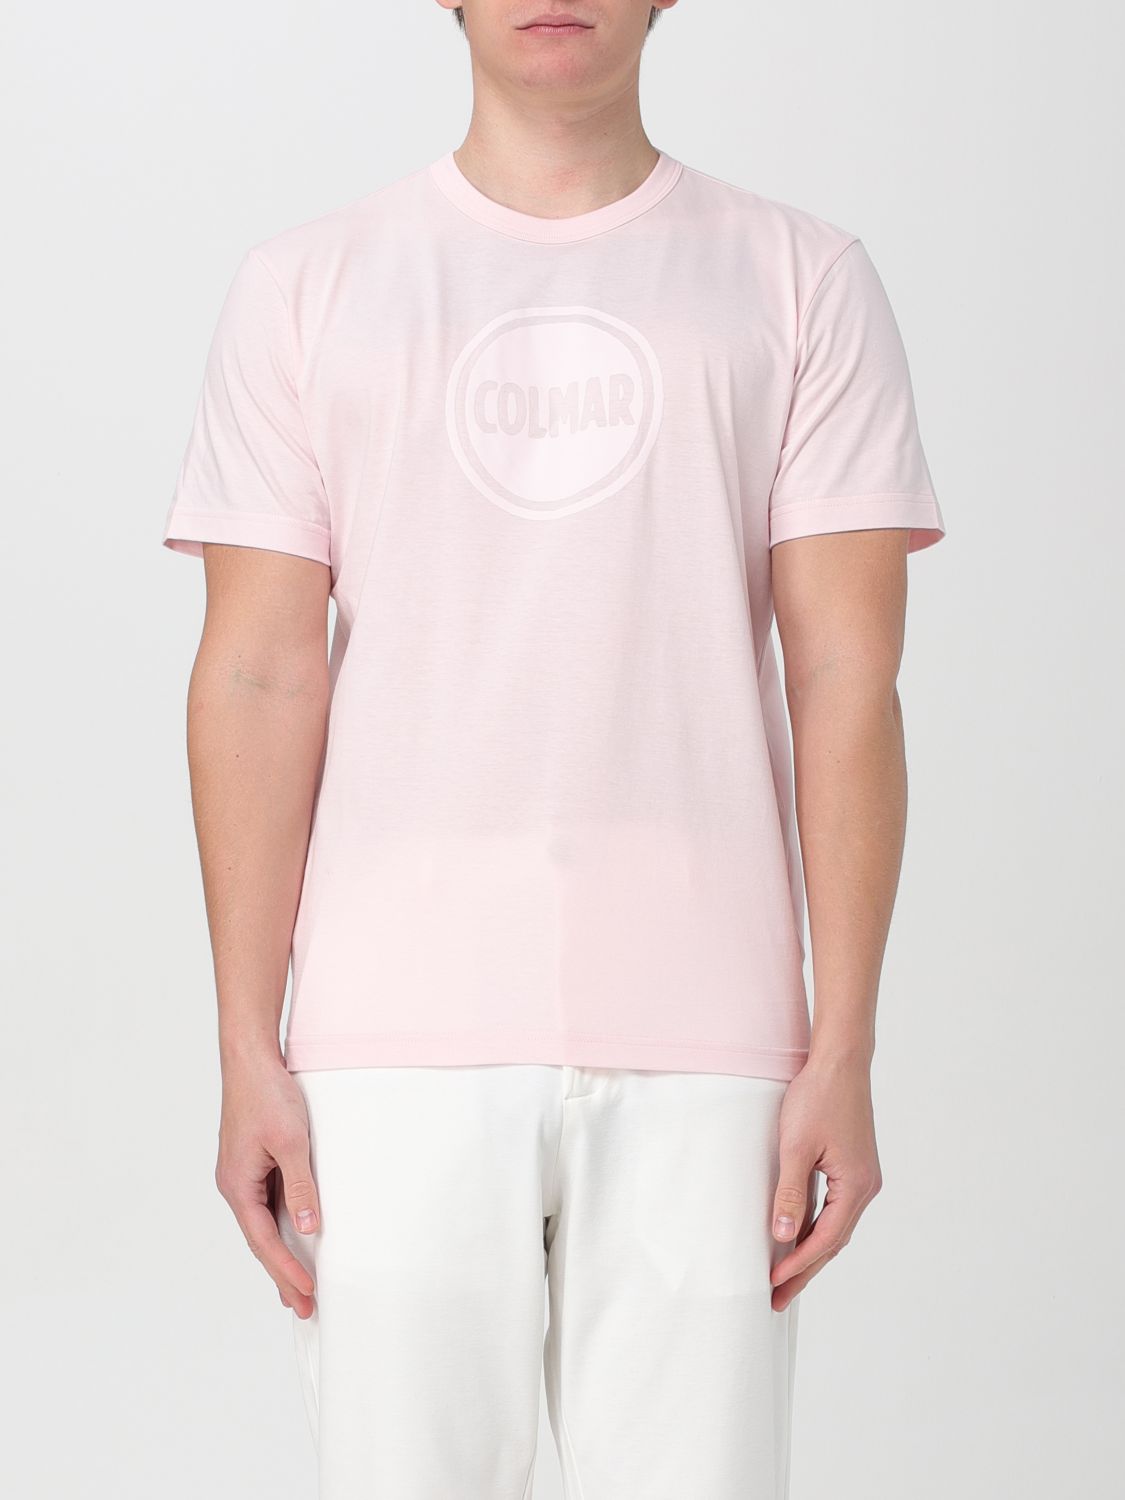 Colmar T-Shirt COLMAR Men colour Pink